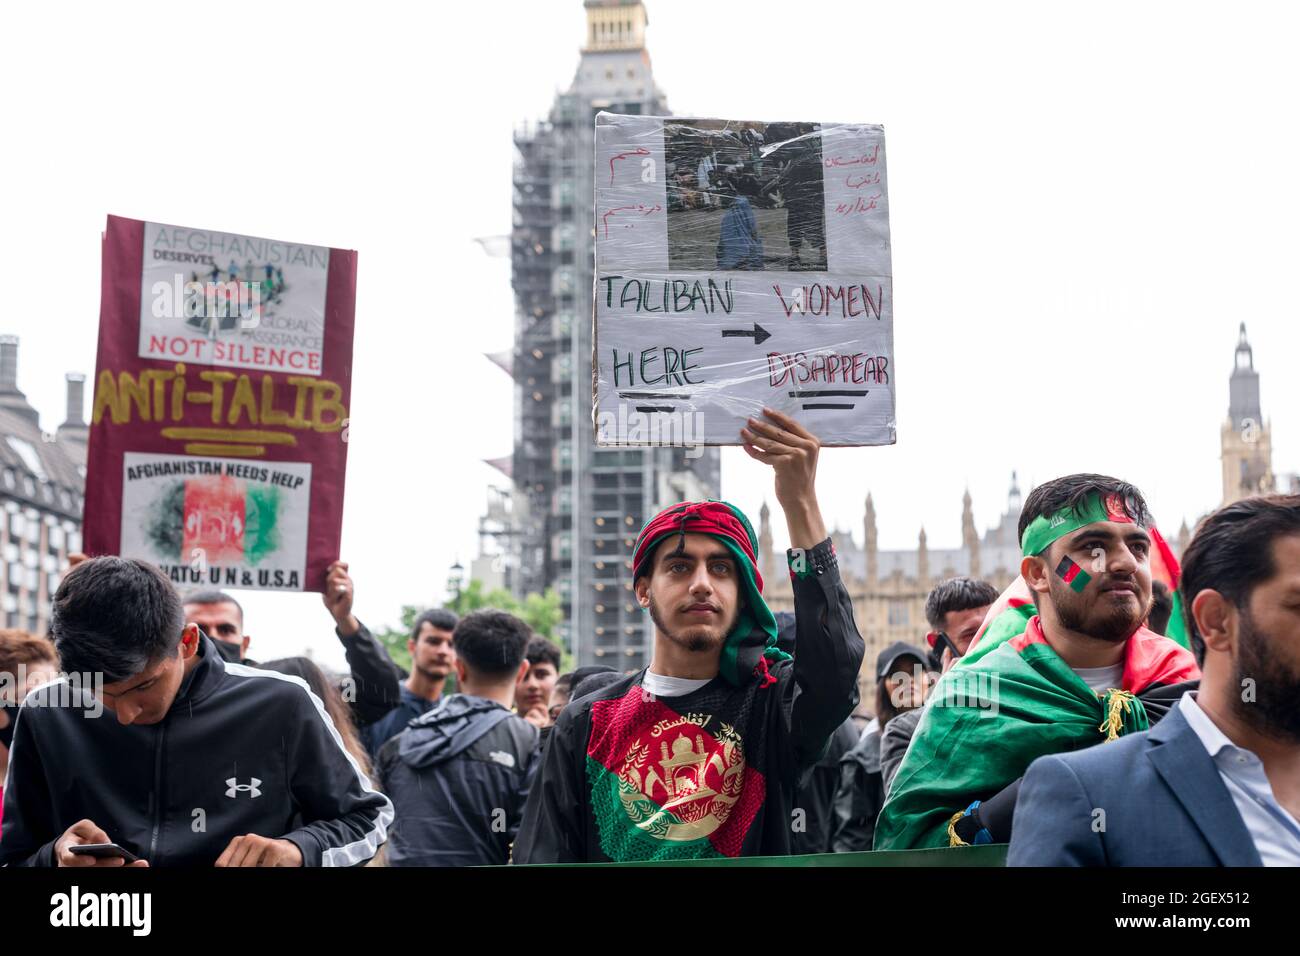 Un manifestante sostiene una pancarta que dice que los talibanes aquí, las mujeres desaparecen durante la manifestación.Tras la reciente toma de Kabul, la capital de Afganistán, por los talibanes, grupos activistas, entre ellos Stop the War UK e intérpretes/traductores afganos en Londres se reunieron fuera de la Plaza del Parlamento para expresar su solidaridad con los afganos. Pedían una acción urgente por parte del gobierno de Boris Johnson para proteger a los miembros de la familia cuyas vidas están amenazadas, específicamente para arrojar luz sobre los derechos de las mujeres y los niños. (Foto de Belinda Jiao/SOPA Images/Sipa USA) Foto de stock